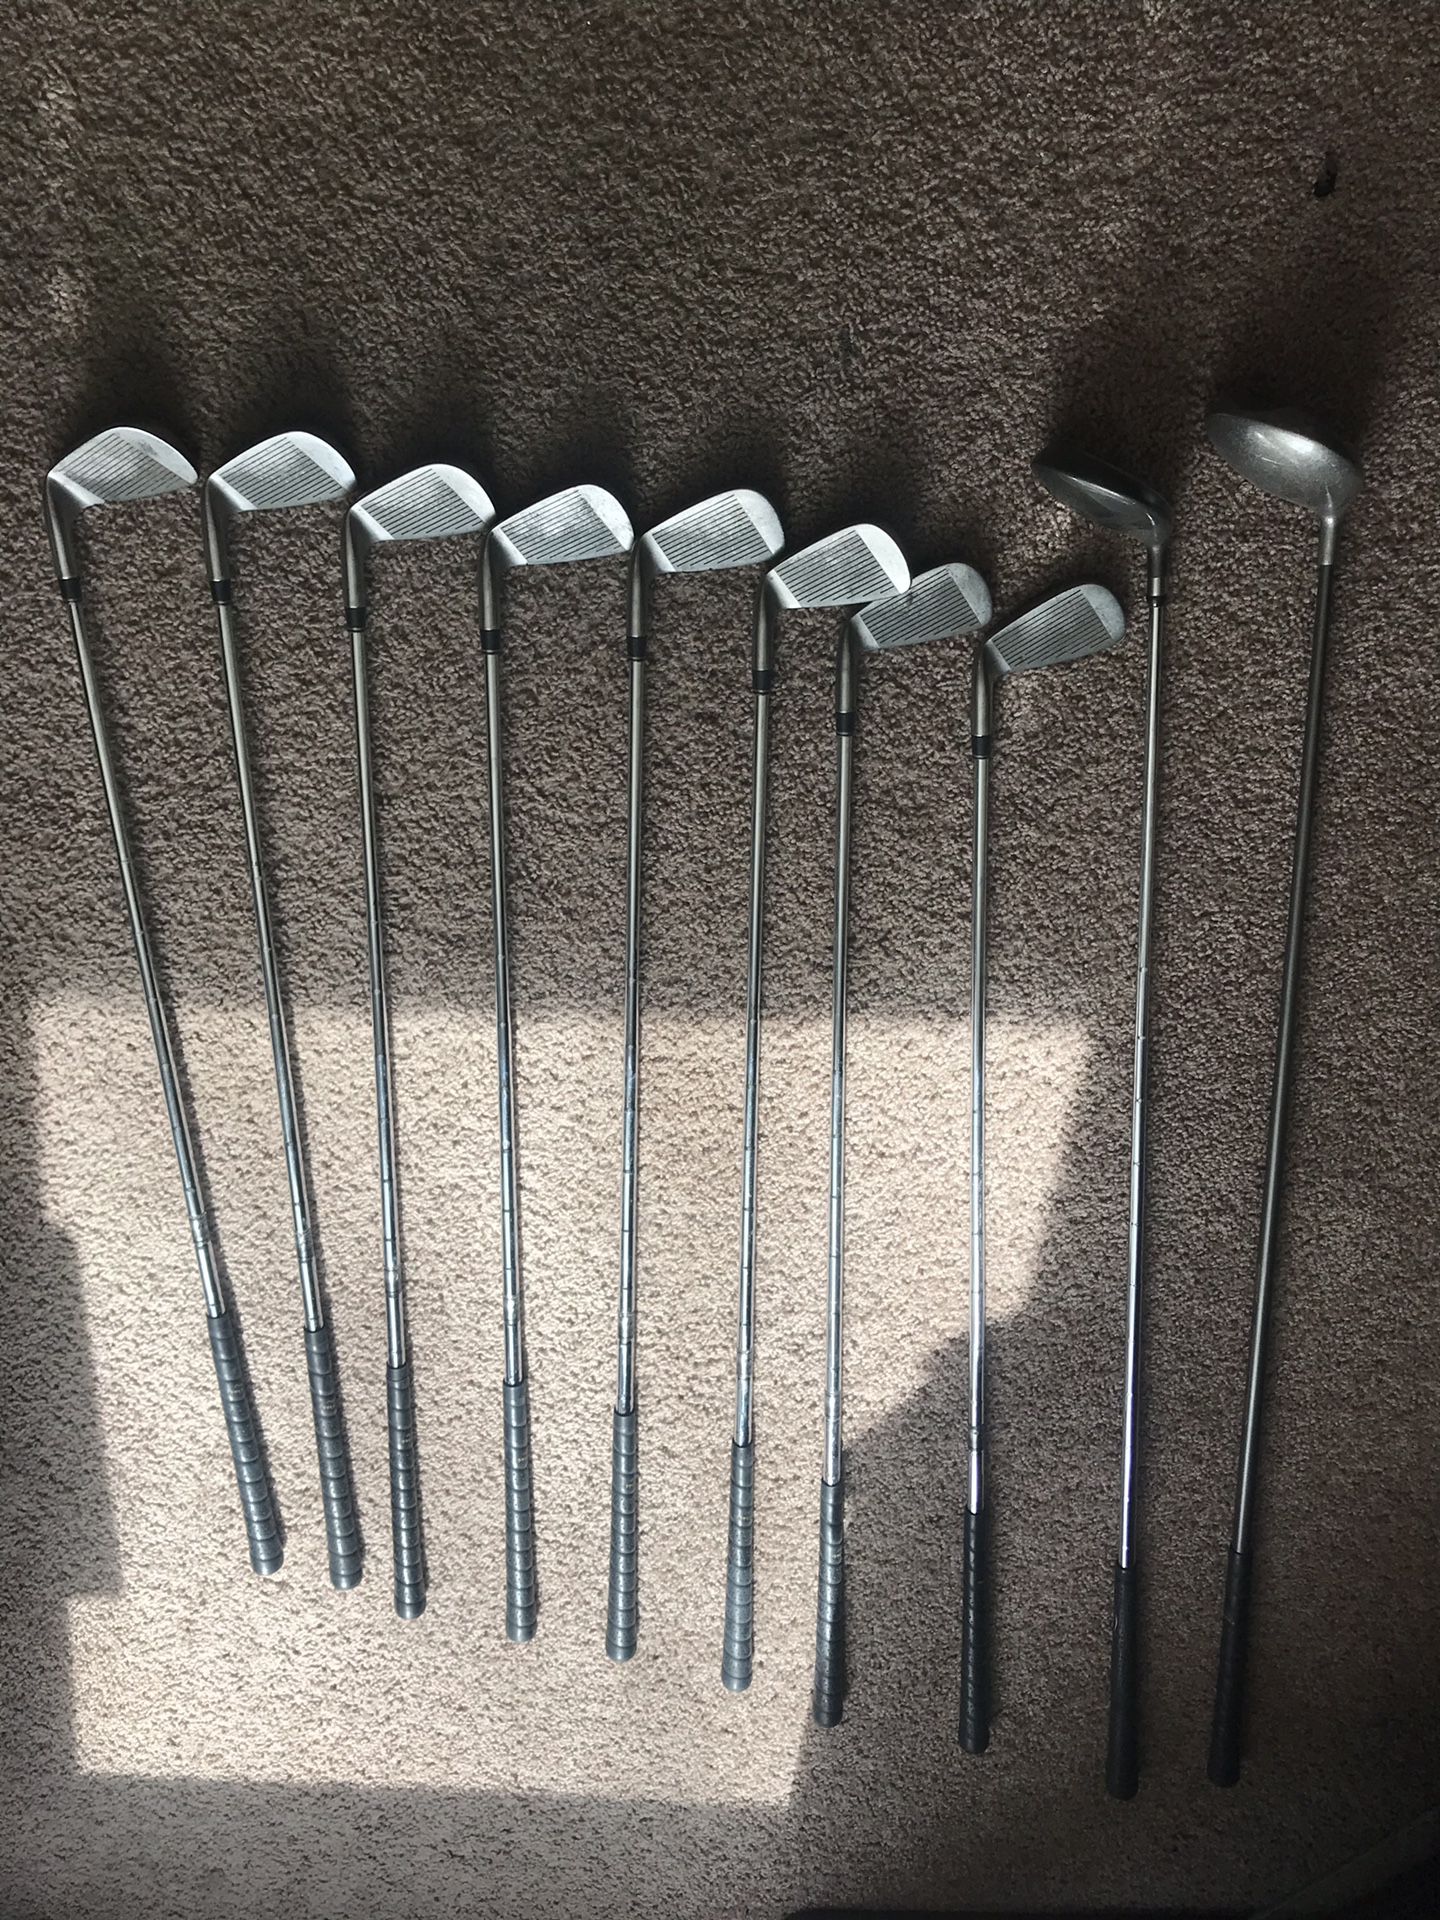 Beginner set of golf clubs